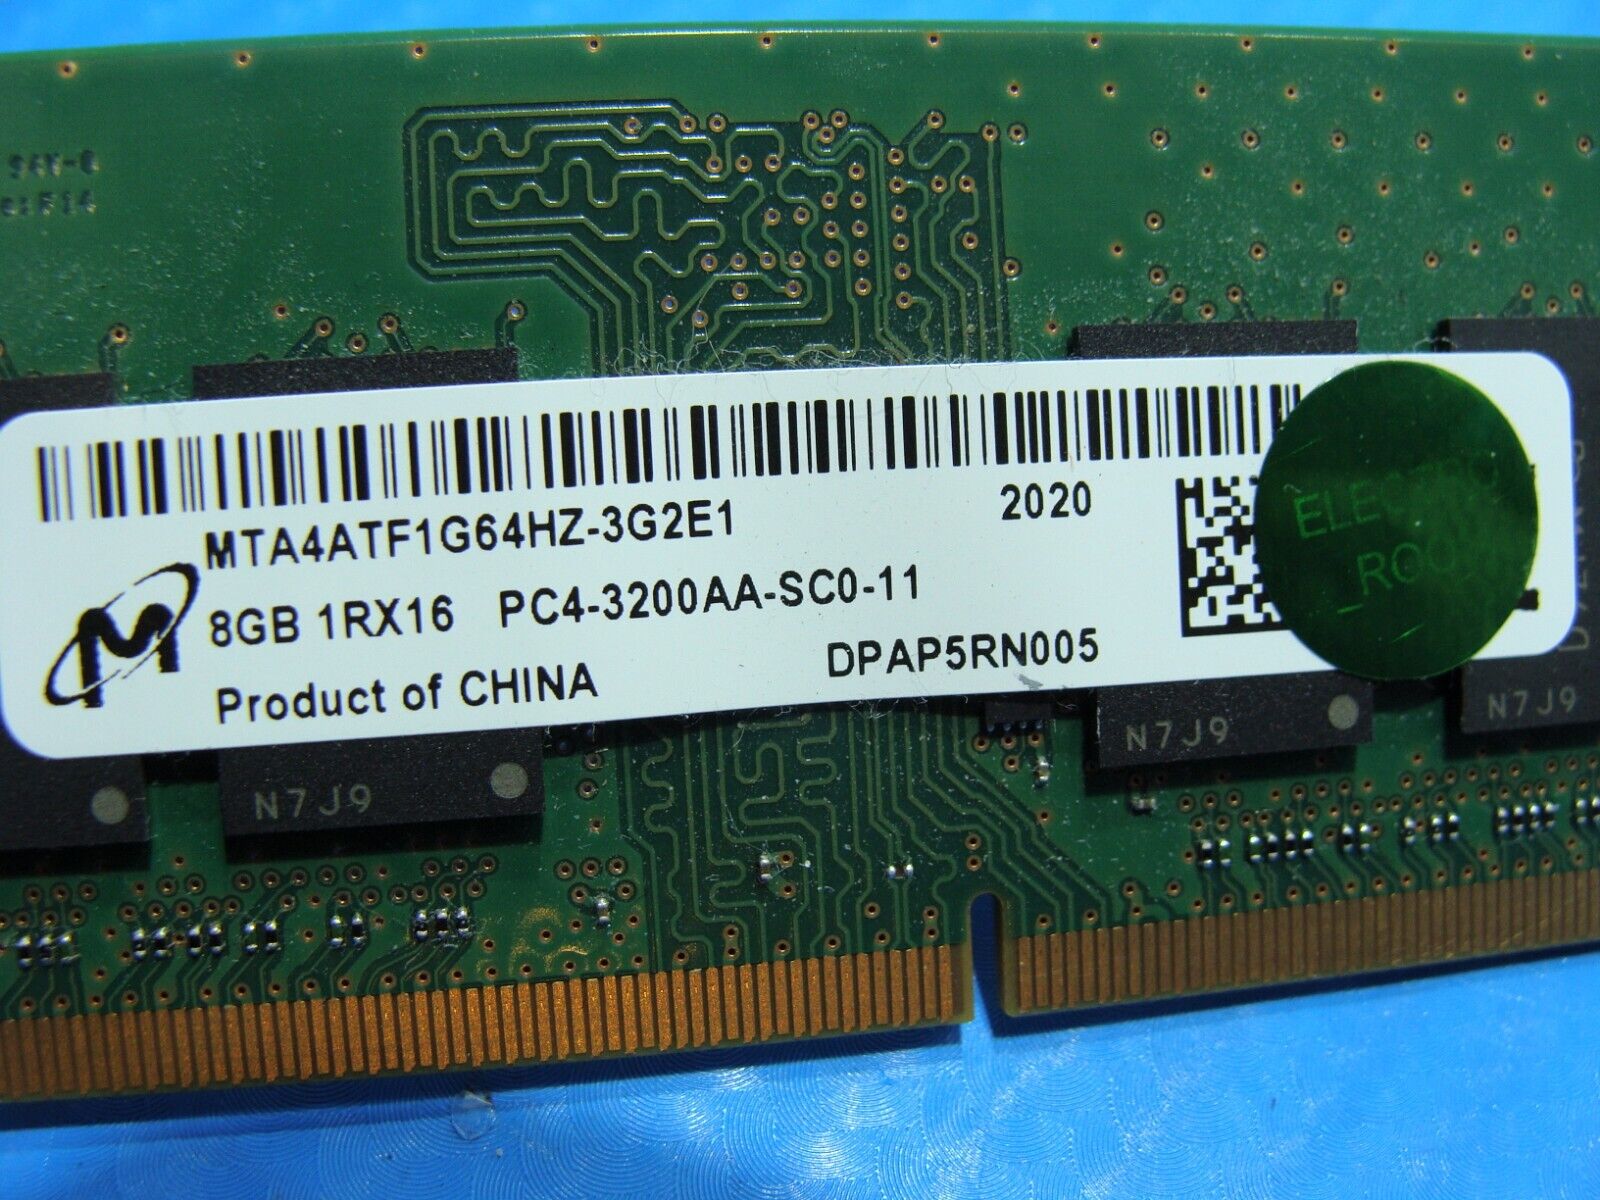 Lenovo 17ADA05 So-Dimm Micron 8Gb 1Rx16 Memory PC4-3200AA MTA4ATF1G64HZ-3G2E1